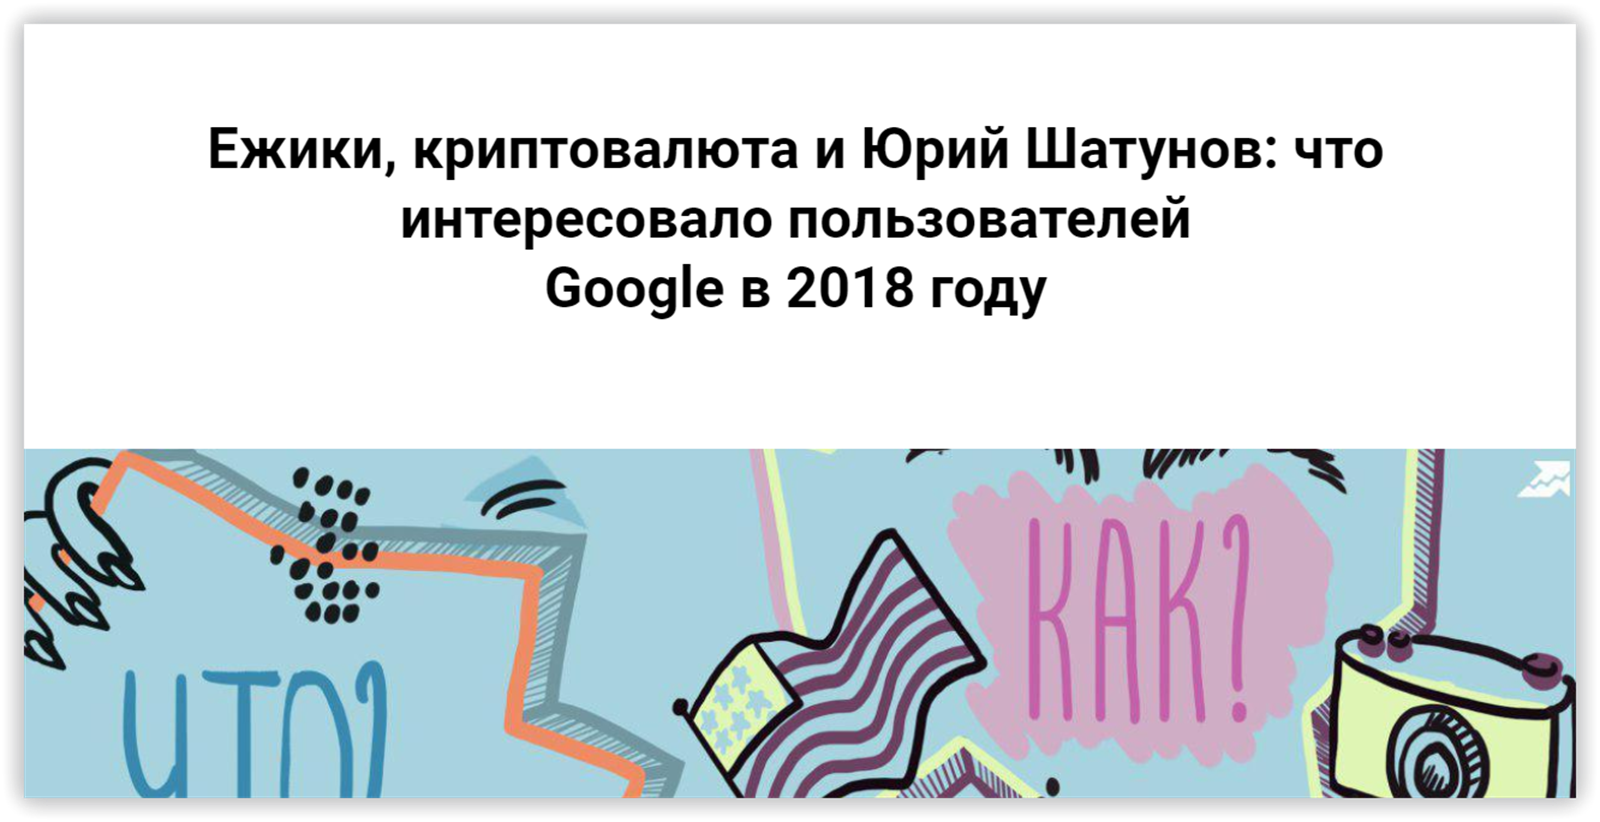 Ежики, криптовалюта и Юрий Шатунов: что интересовало пользователей Google в 2018 году